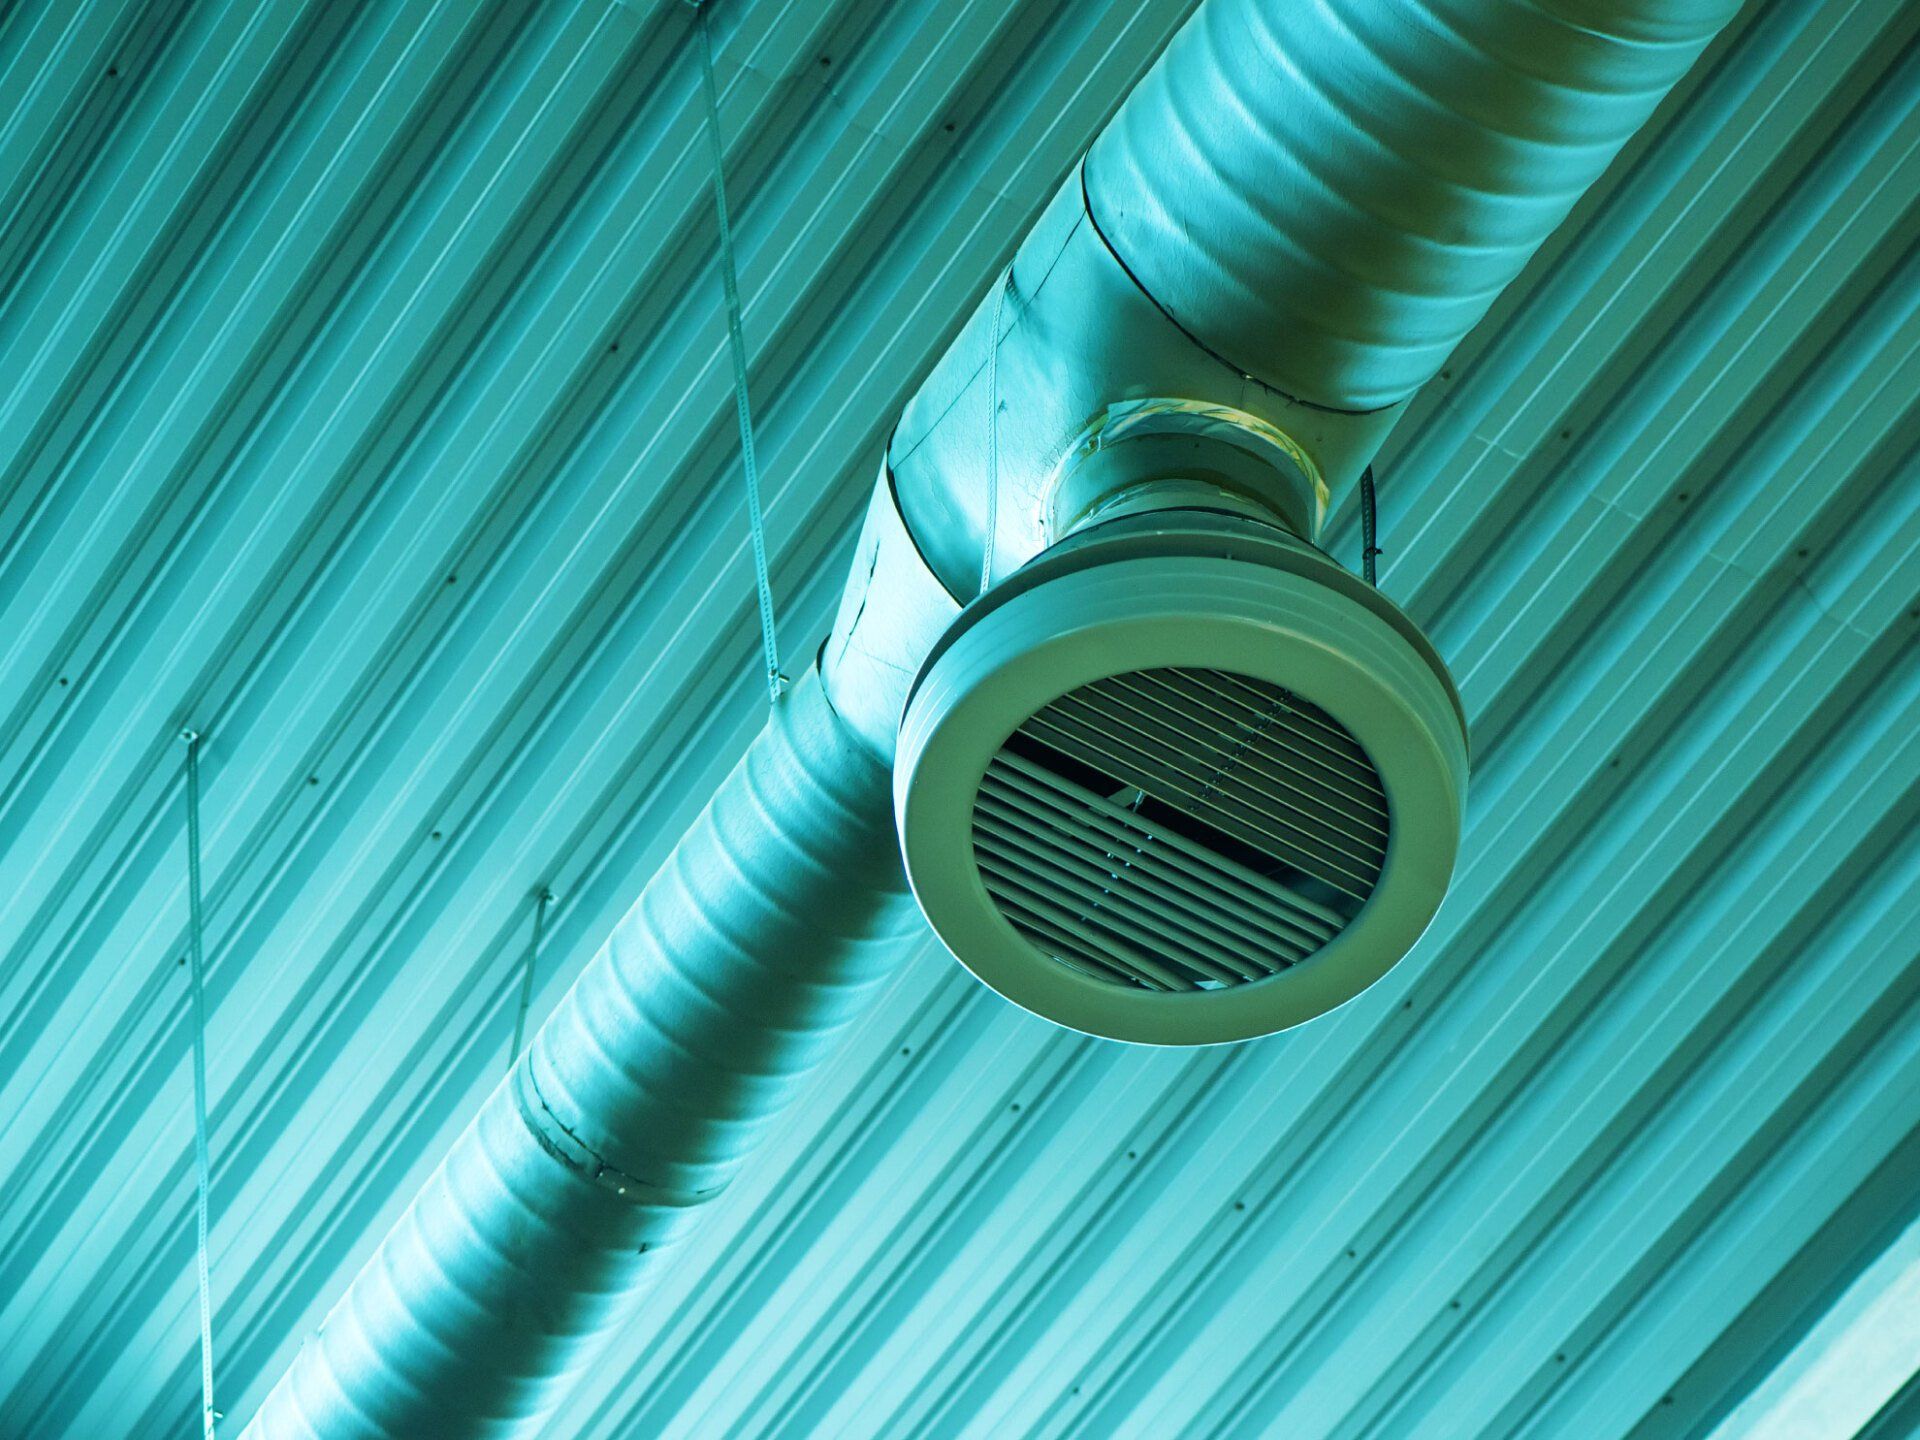 Imagem de parte do sistema de ventilação industrial